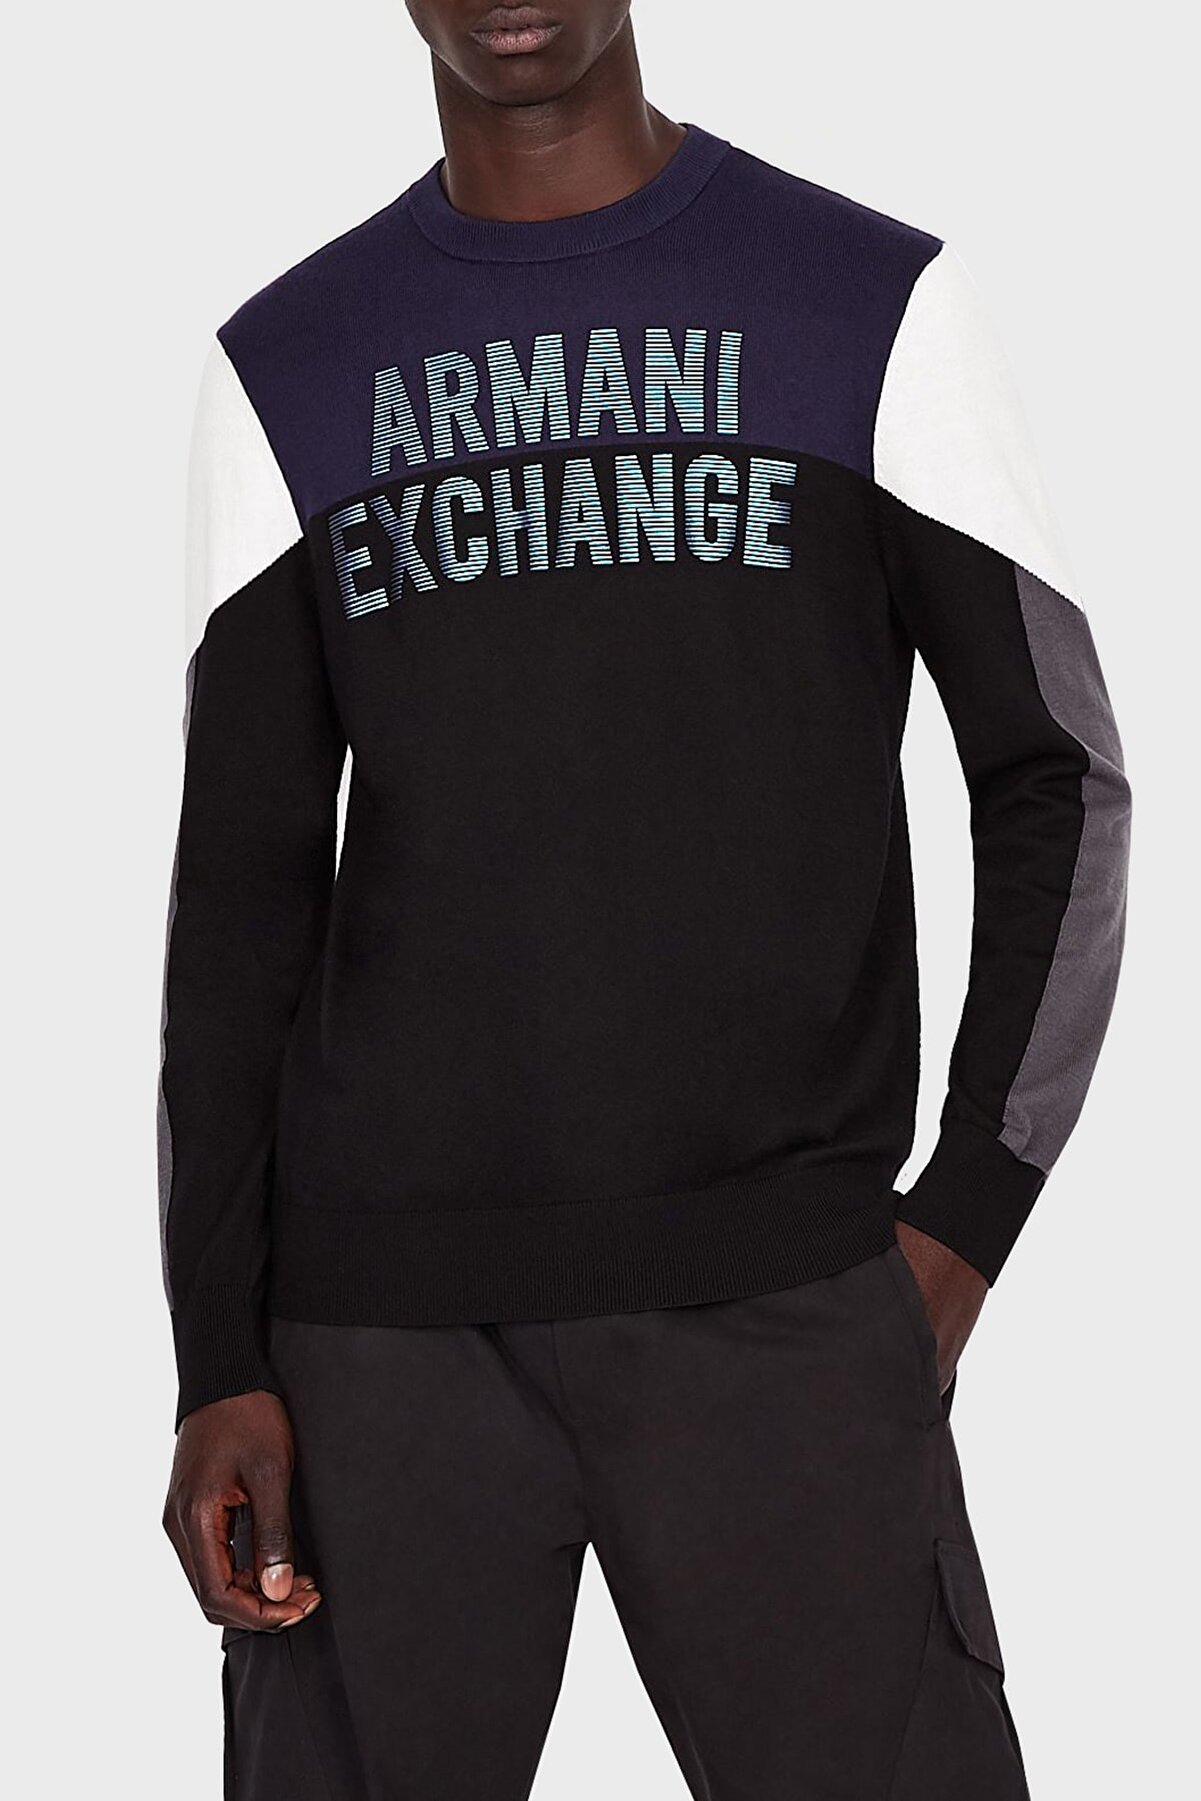 Armani Exchange Baskılı Pamuklu Regular Fit Kazak Erkek Kazak 6kzm1w Zm1az 2207